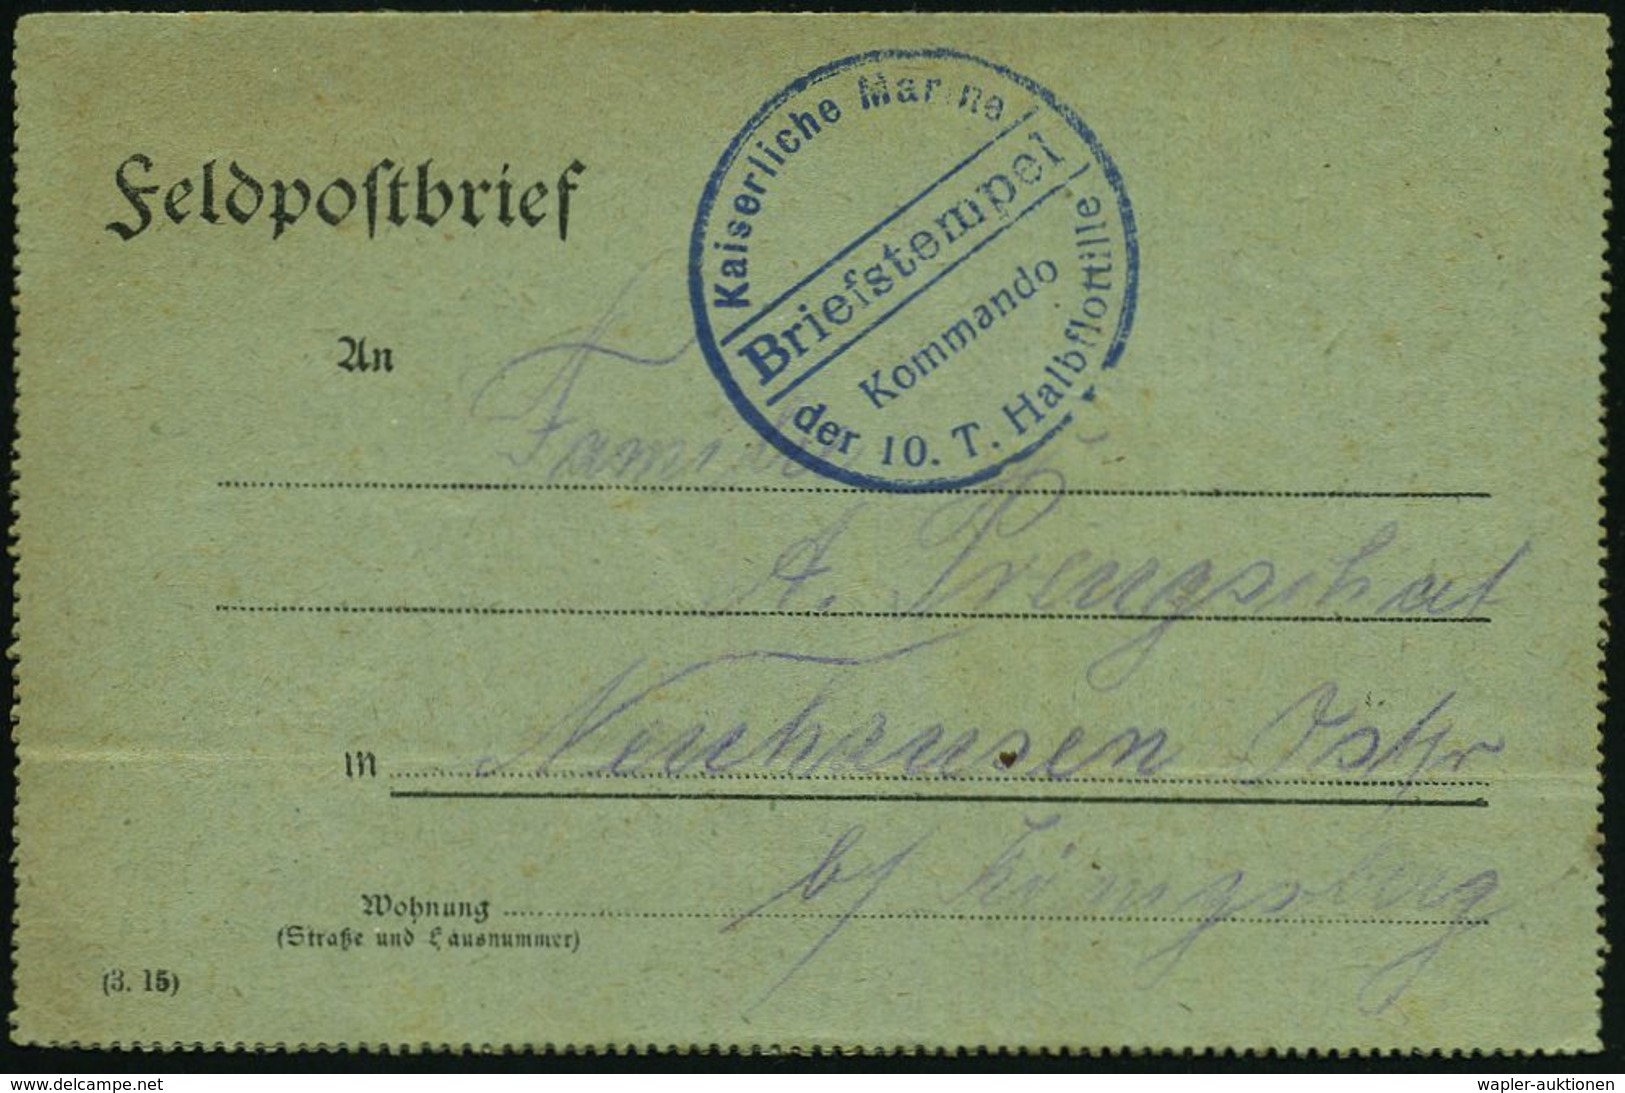 DEUTSCHES REICH 1918 (31.5.) Blauer 1K-Brücken-Briefstempel: Kaiserliche Marine/Kommando/der 10. T.(orpedoboots)-Halbflo - Schiffahrt